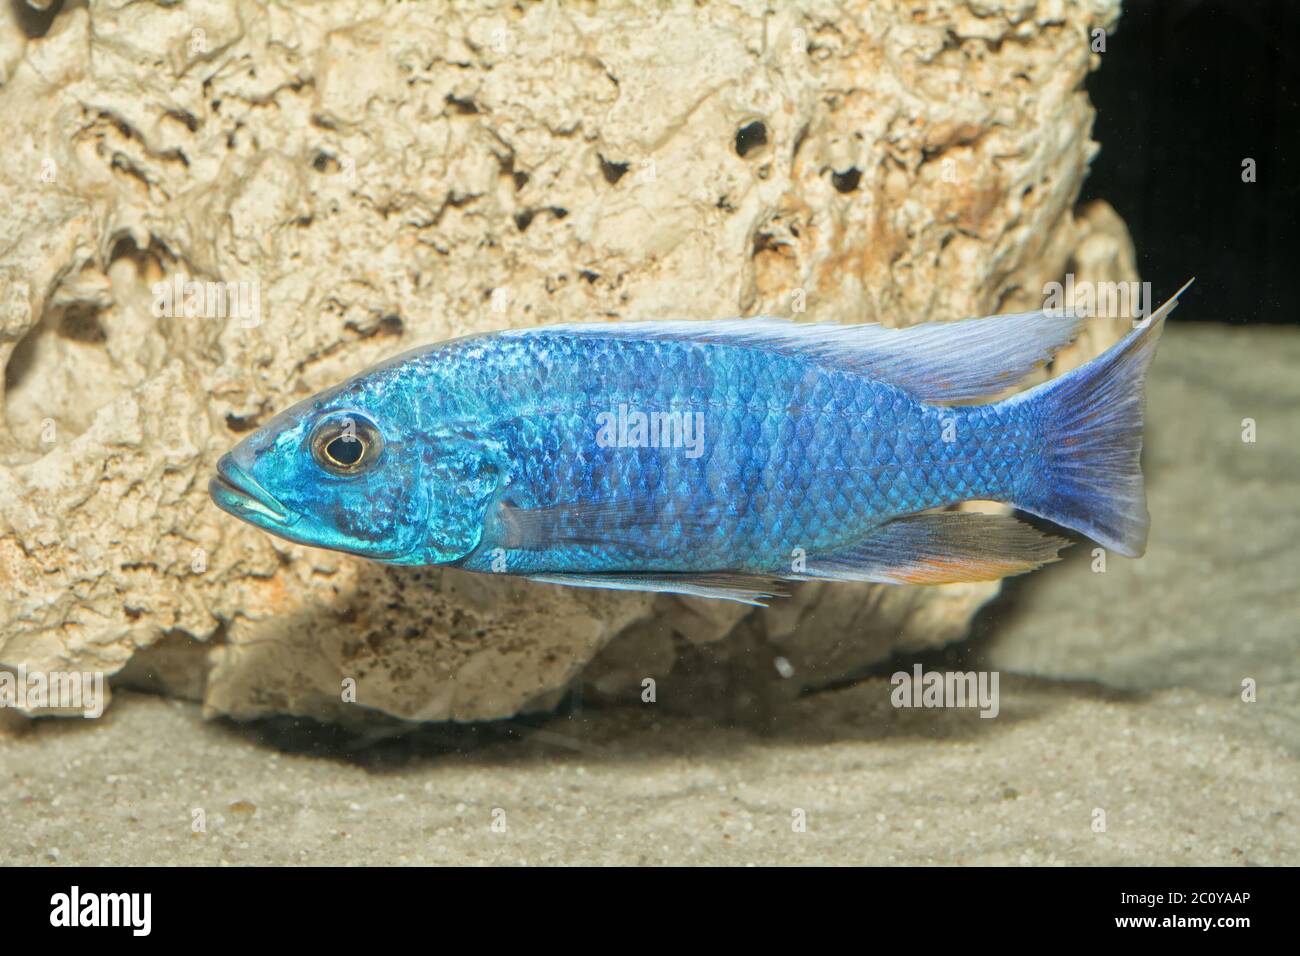 Cichlid fish in a aquarium Stock Photo